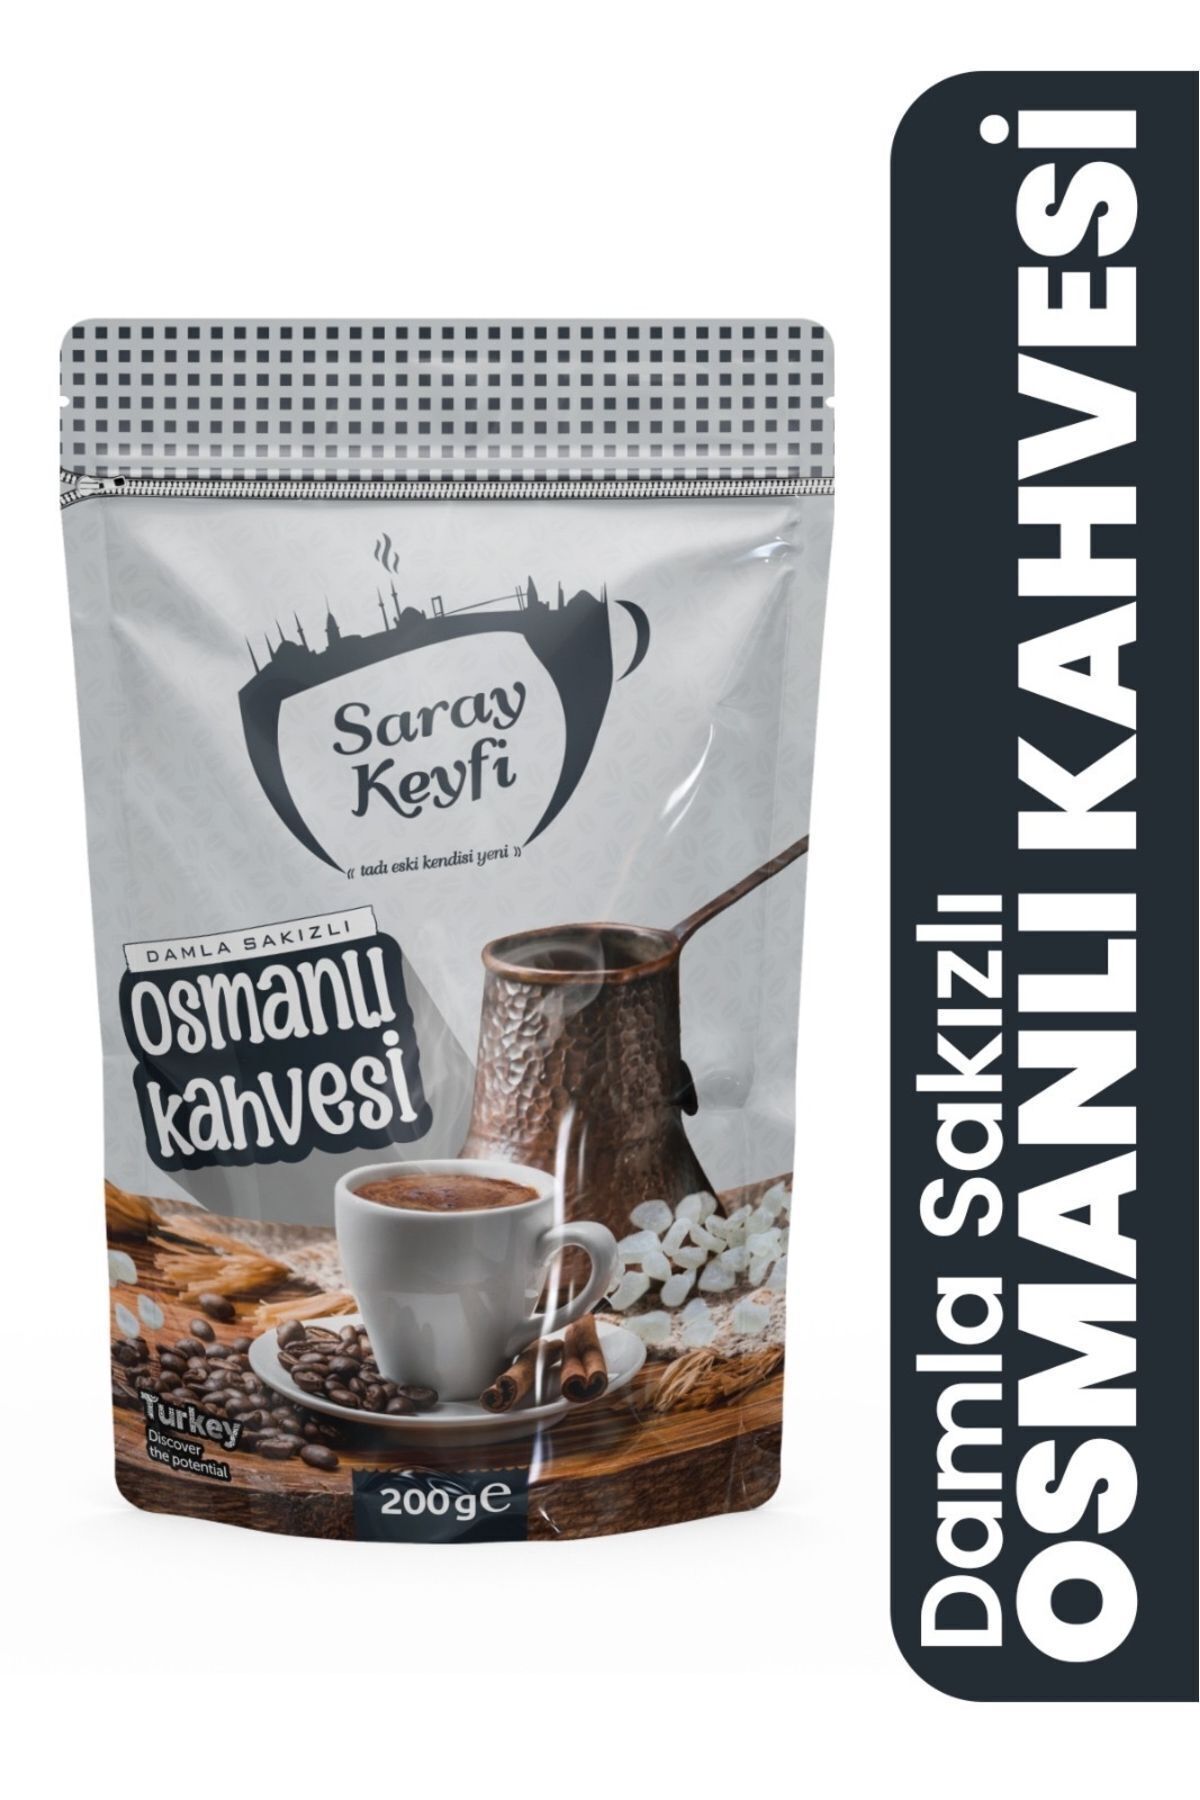 SARAY KAHVE Damla Sakızlı Osmanlı Kahvesi 200 Grm